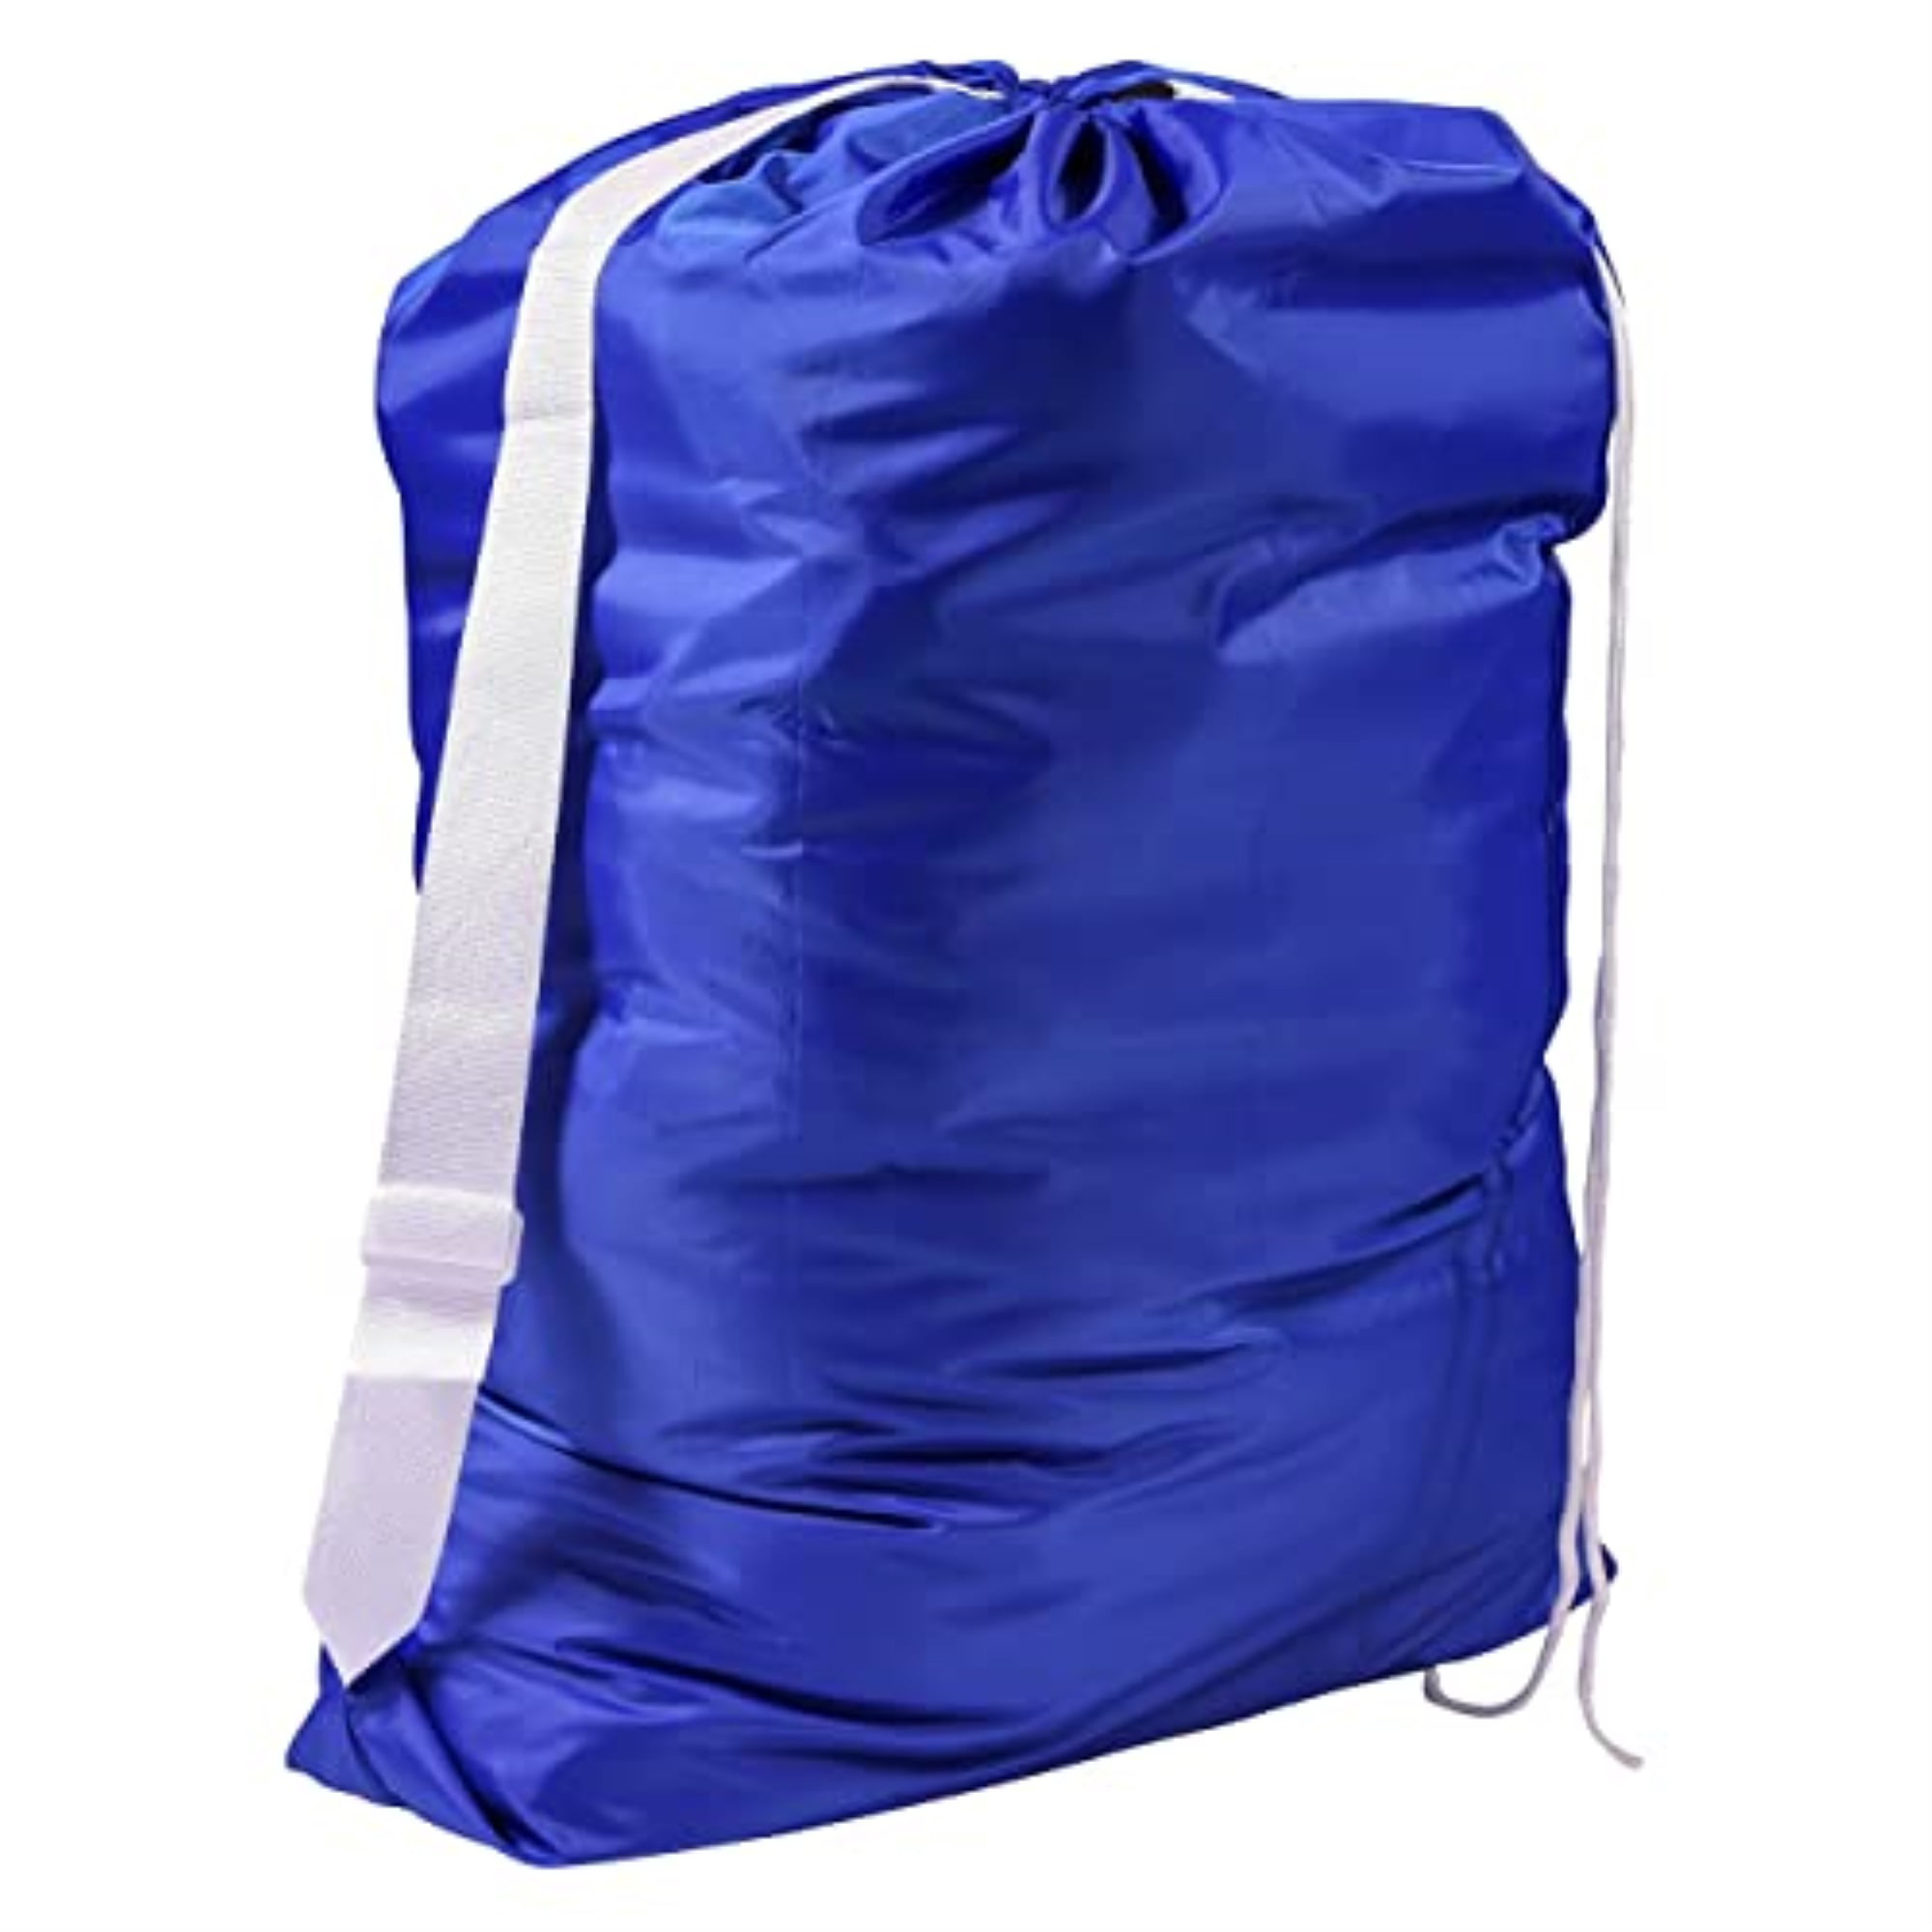 Travel Wash Bag Laundry Wash Bag Lingerie Bag Holiday Bag Summer